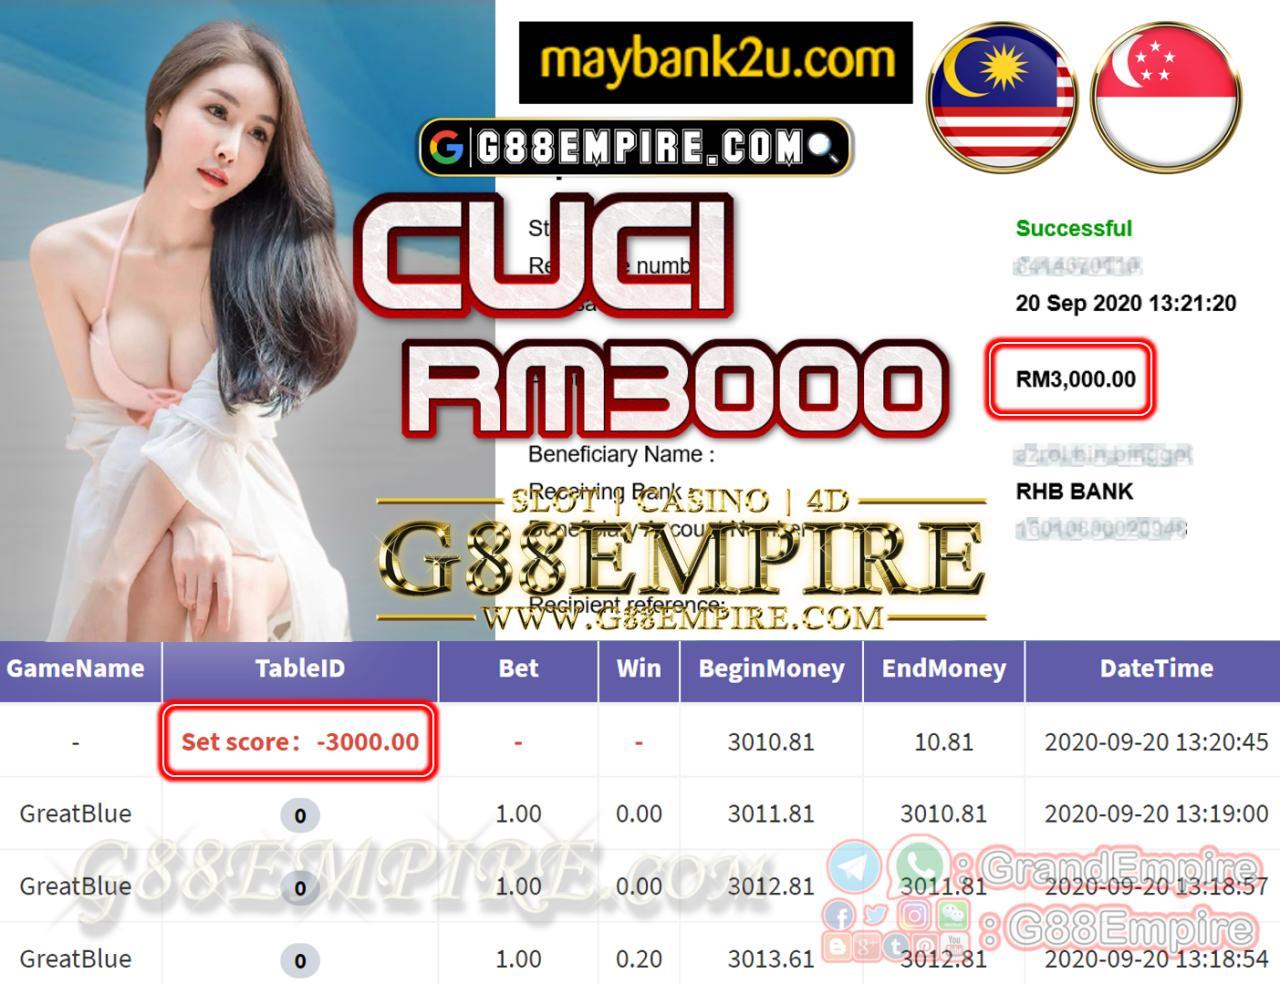 MEMBER MAIN GREATBLUE CUCI RM3000!!!